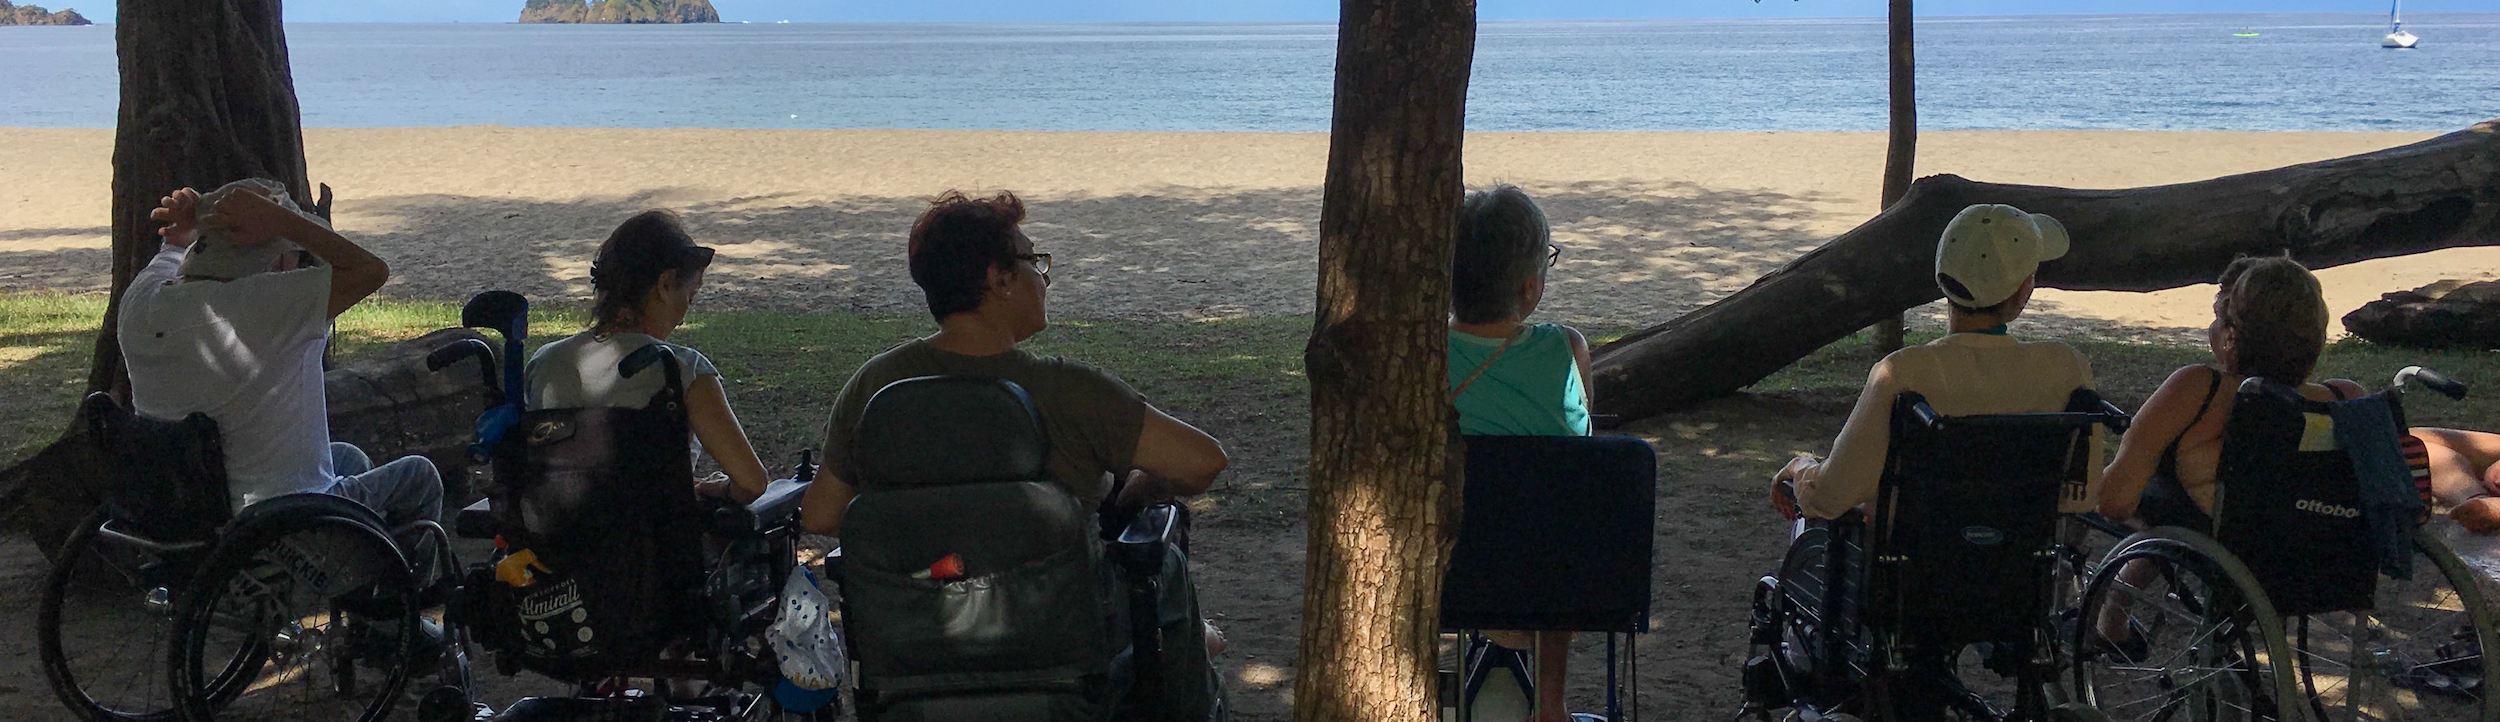 Playa accesible para silla de ruedas y personas con discapacidad